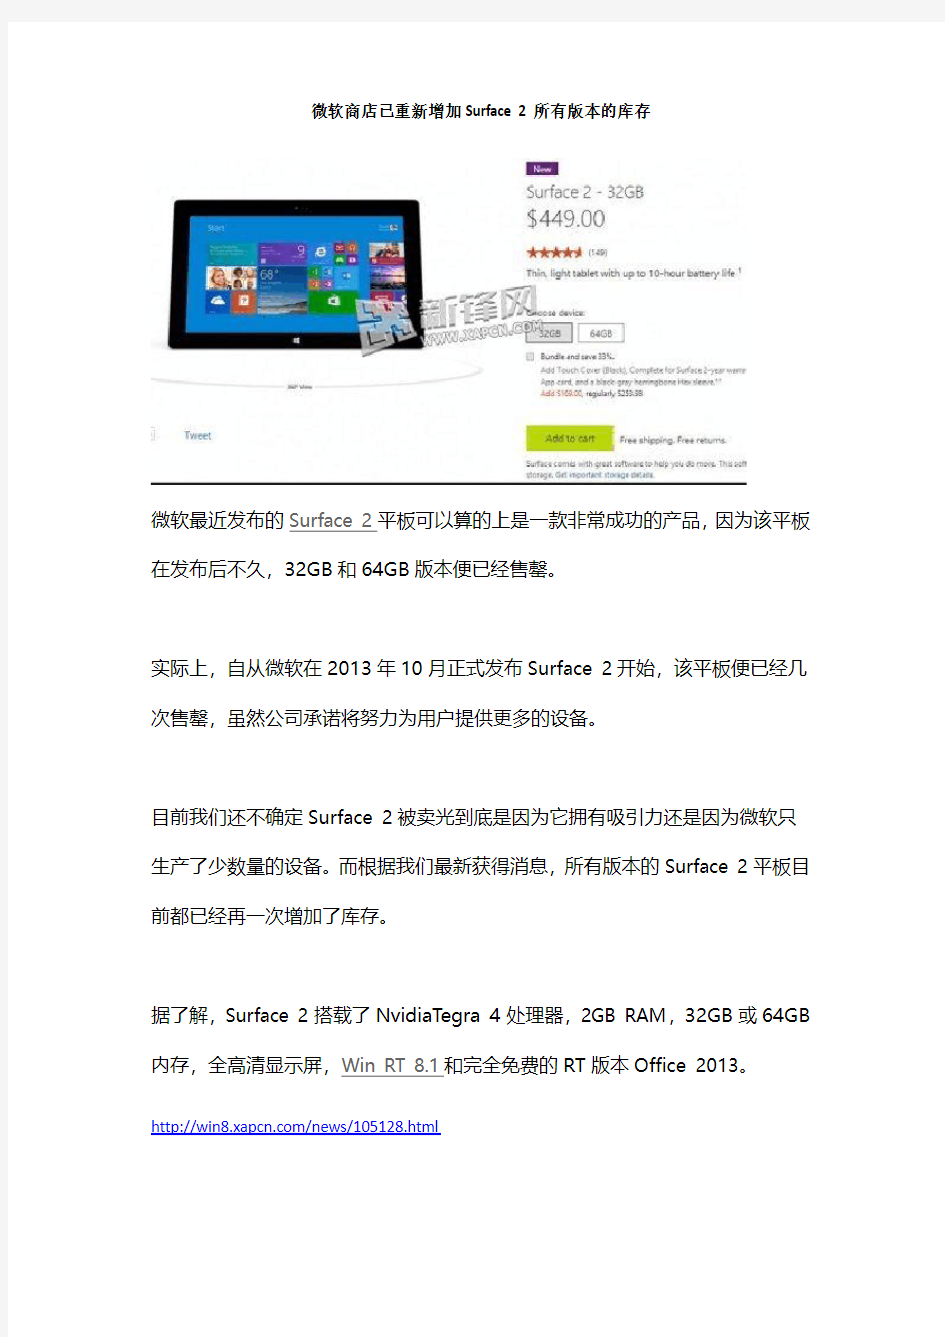 微软商店已重新增加Surface 2所有版本的库存